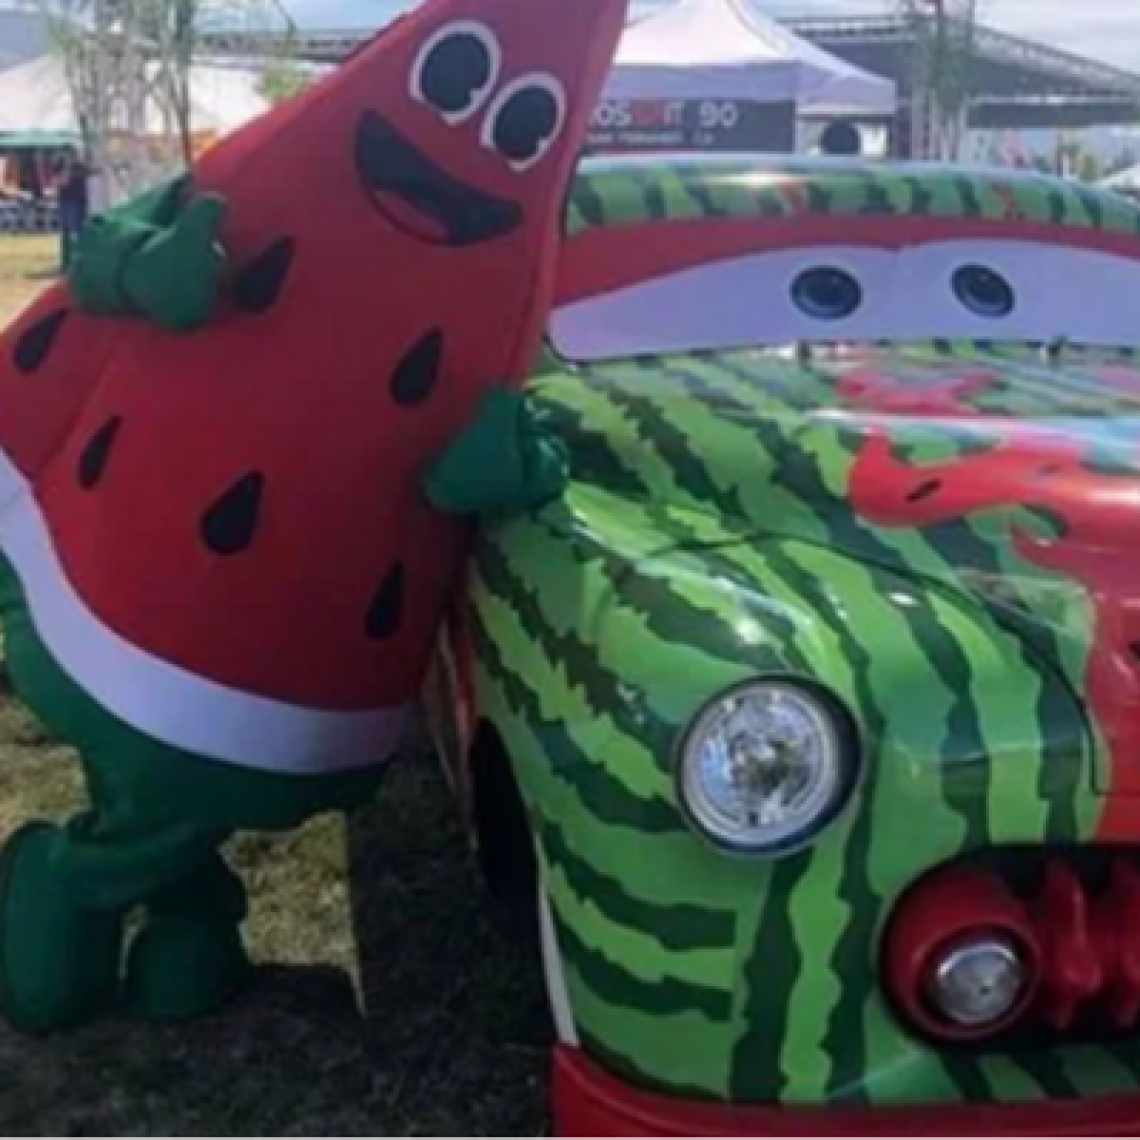 California Watermelon Festival